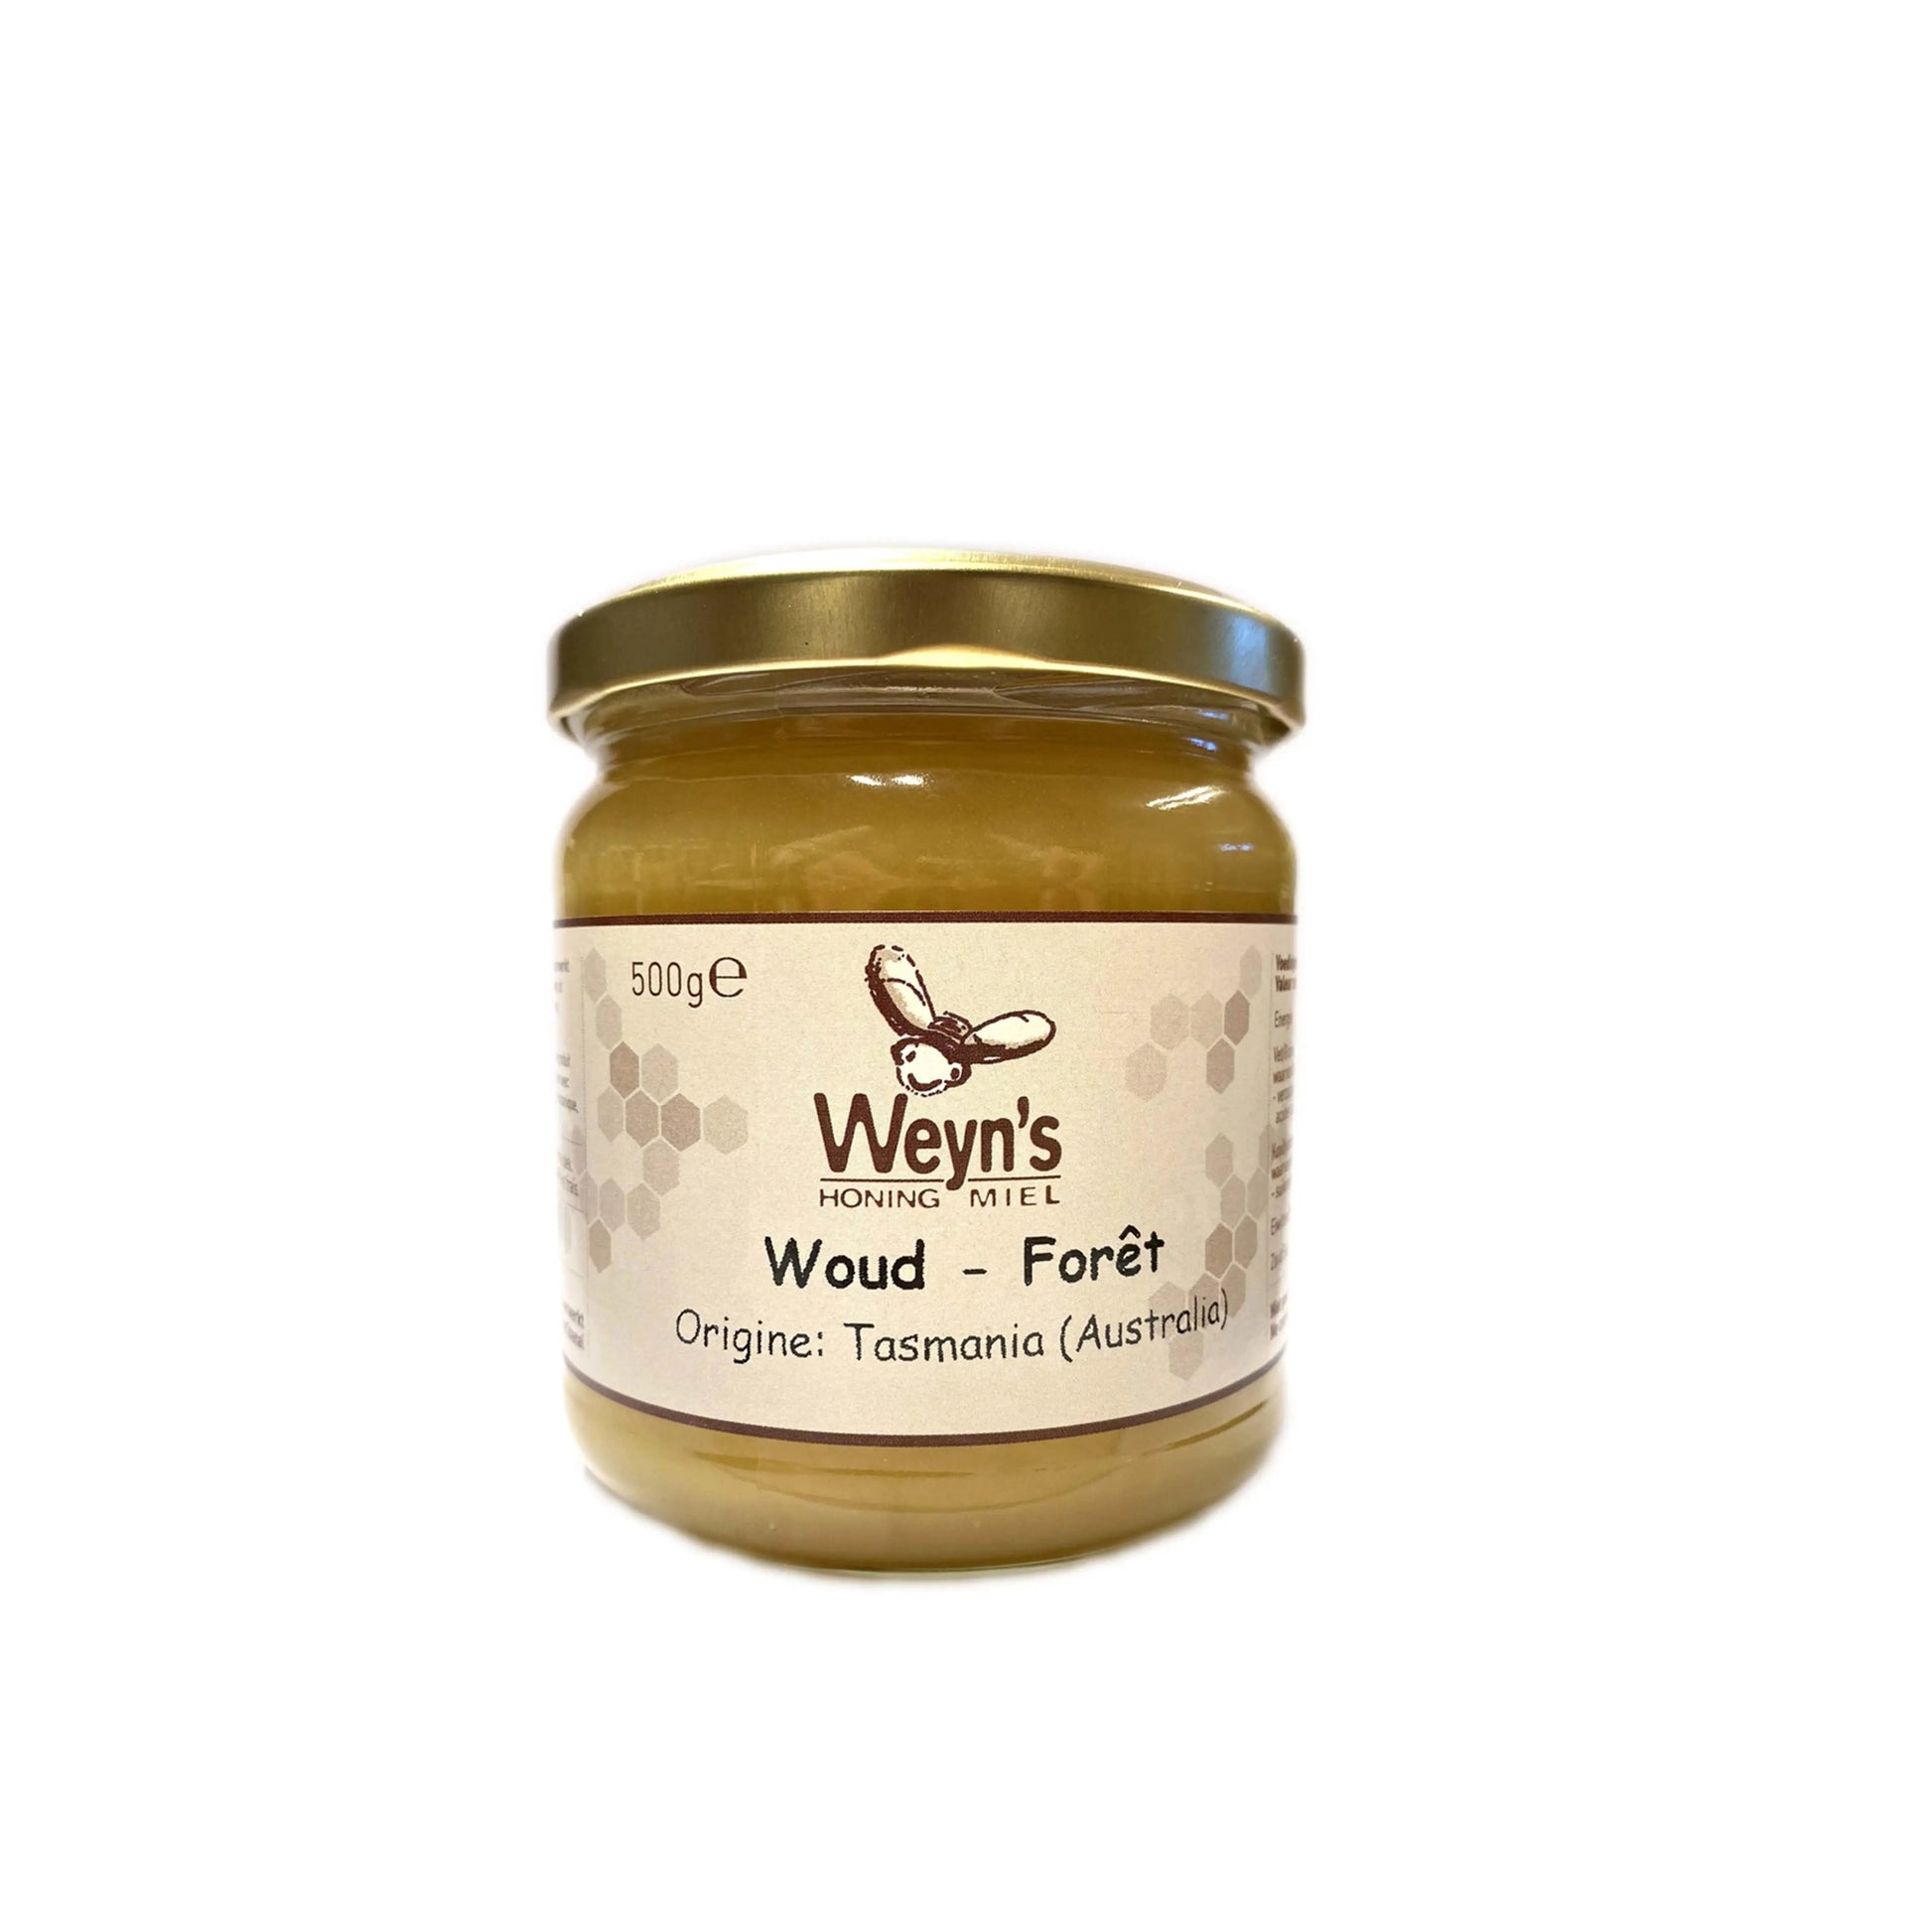 Woudhoning 500g Australië (Tasmanië) Weyn’s (crème) - Honingwinkel